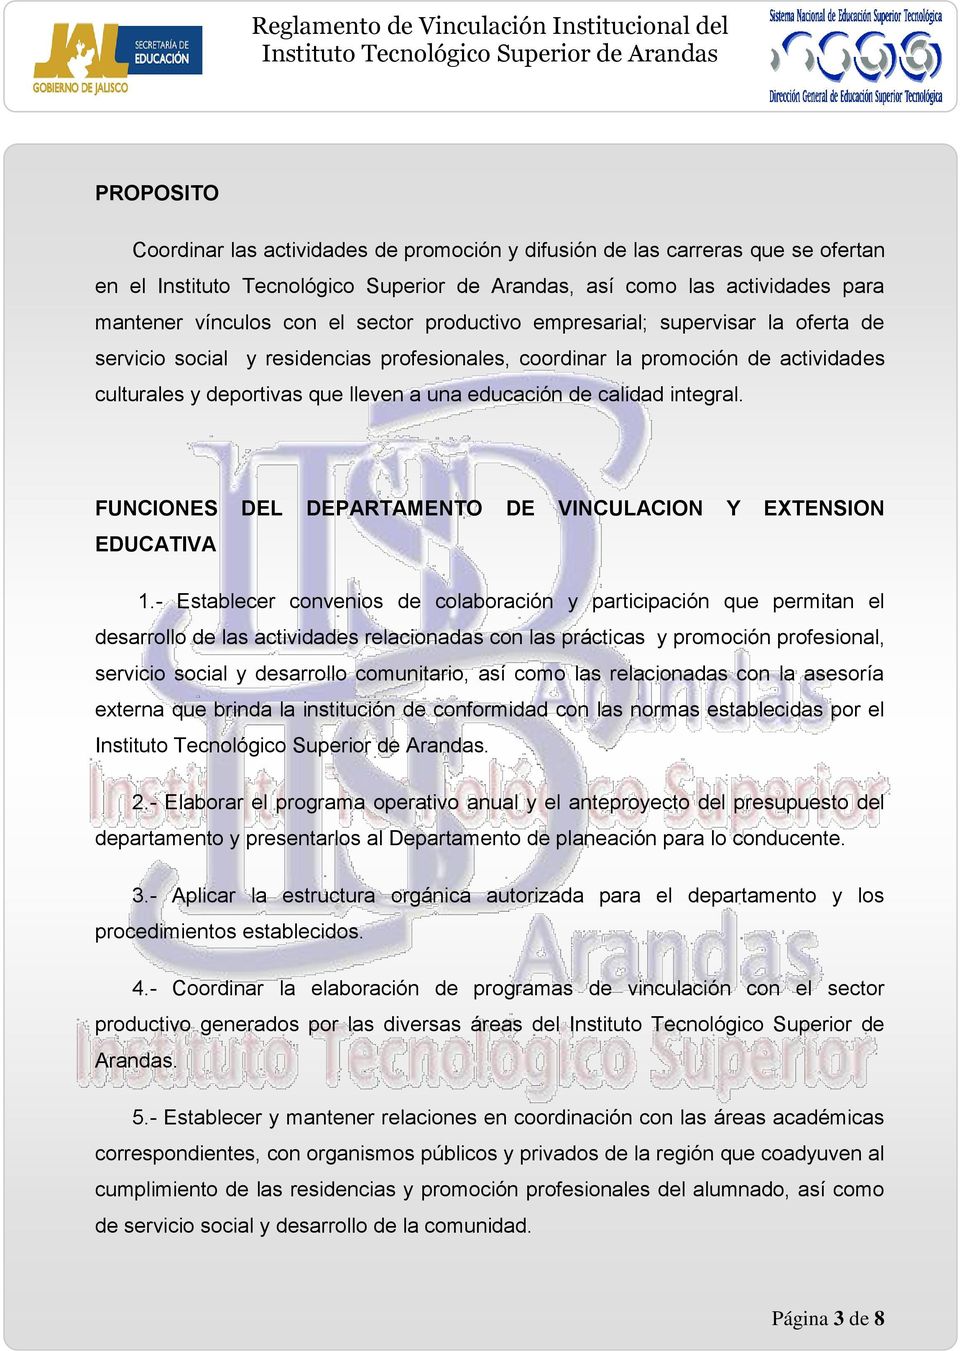 FUNCIONES DEL DEPARTAMENTO DE VINCULACION Y EXTENSION EDUCATIVA 1.